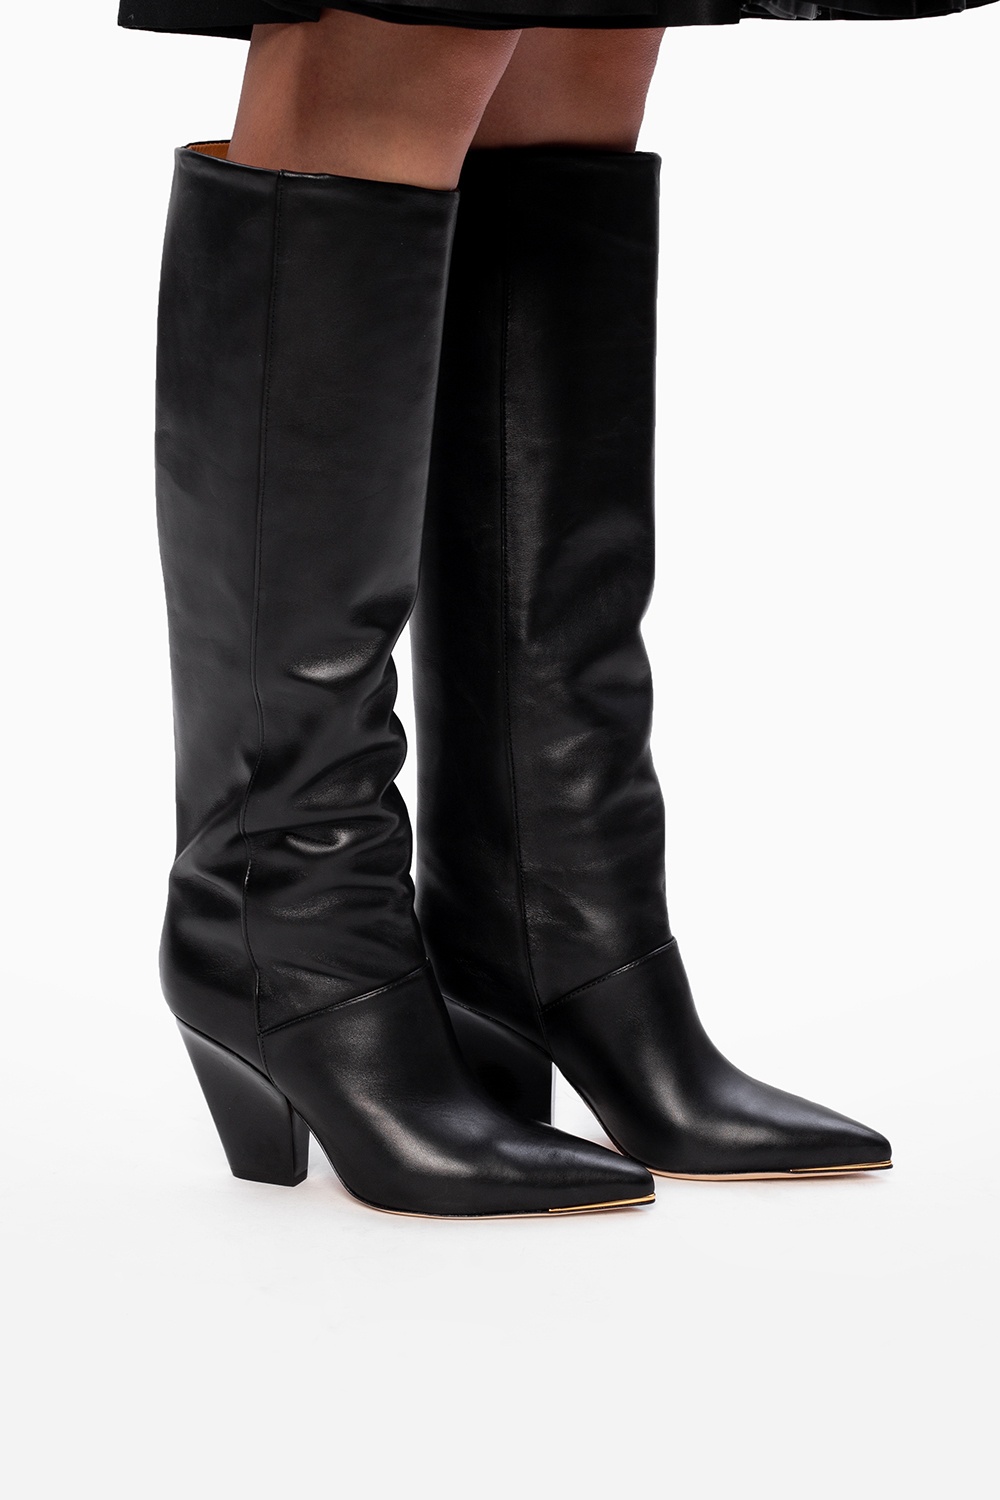 Tory Burch 'Lila' heeled boots | Women's Shoes | Vitkac